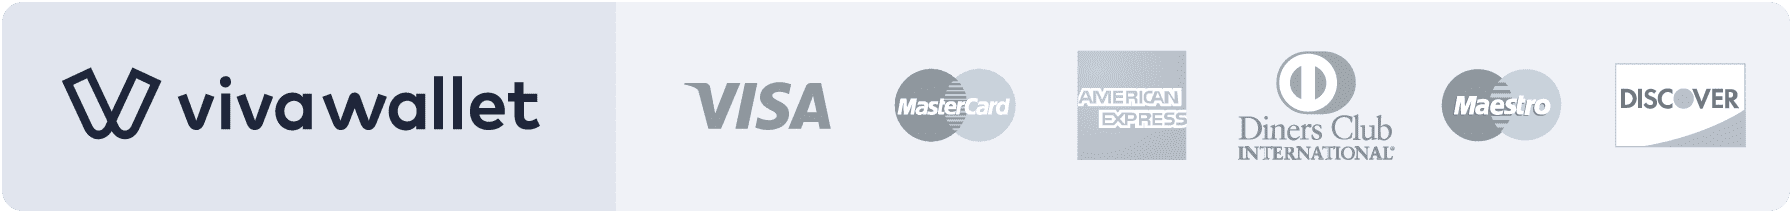 logos-viva-wallet.png